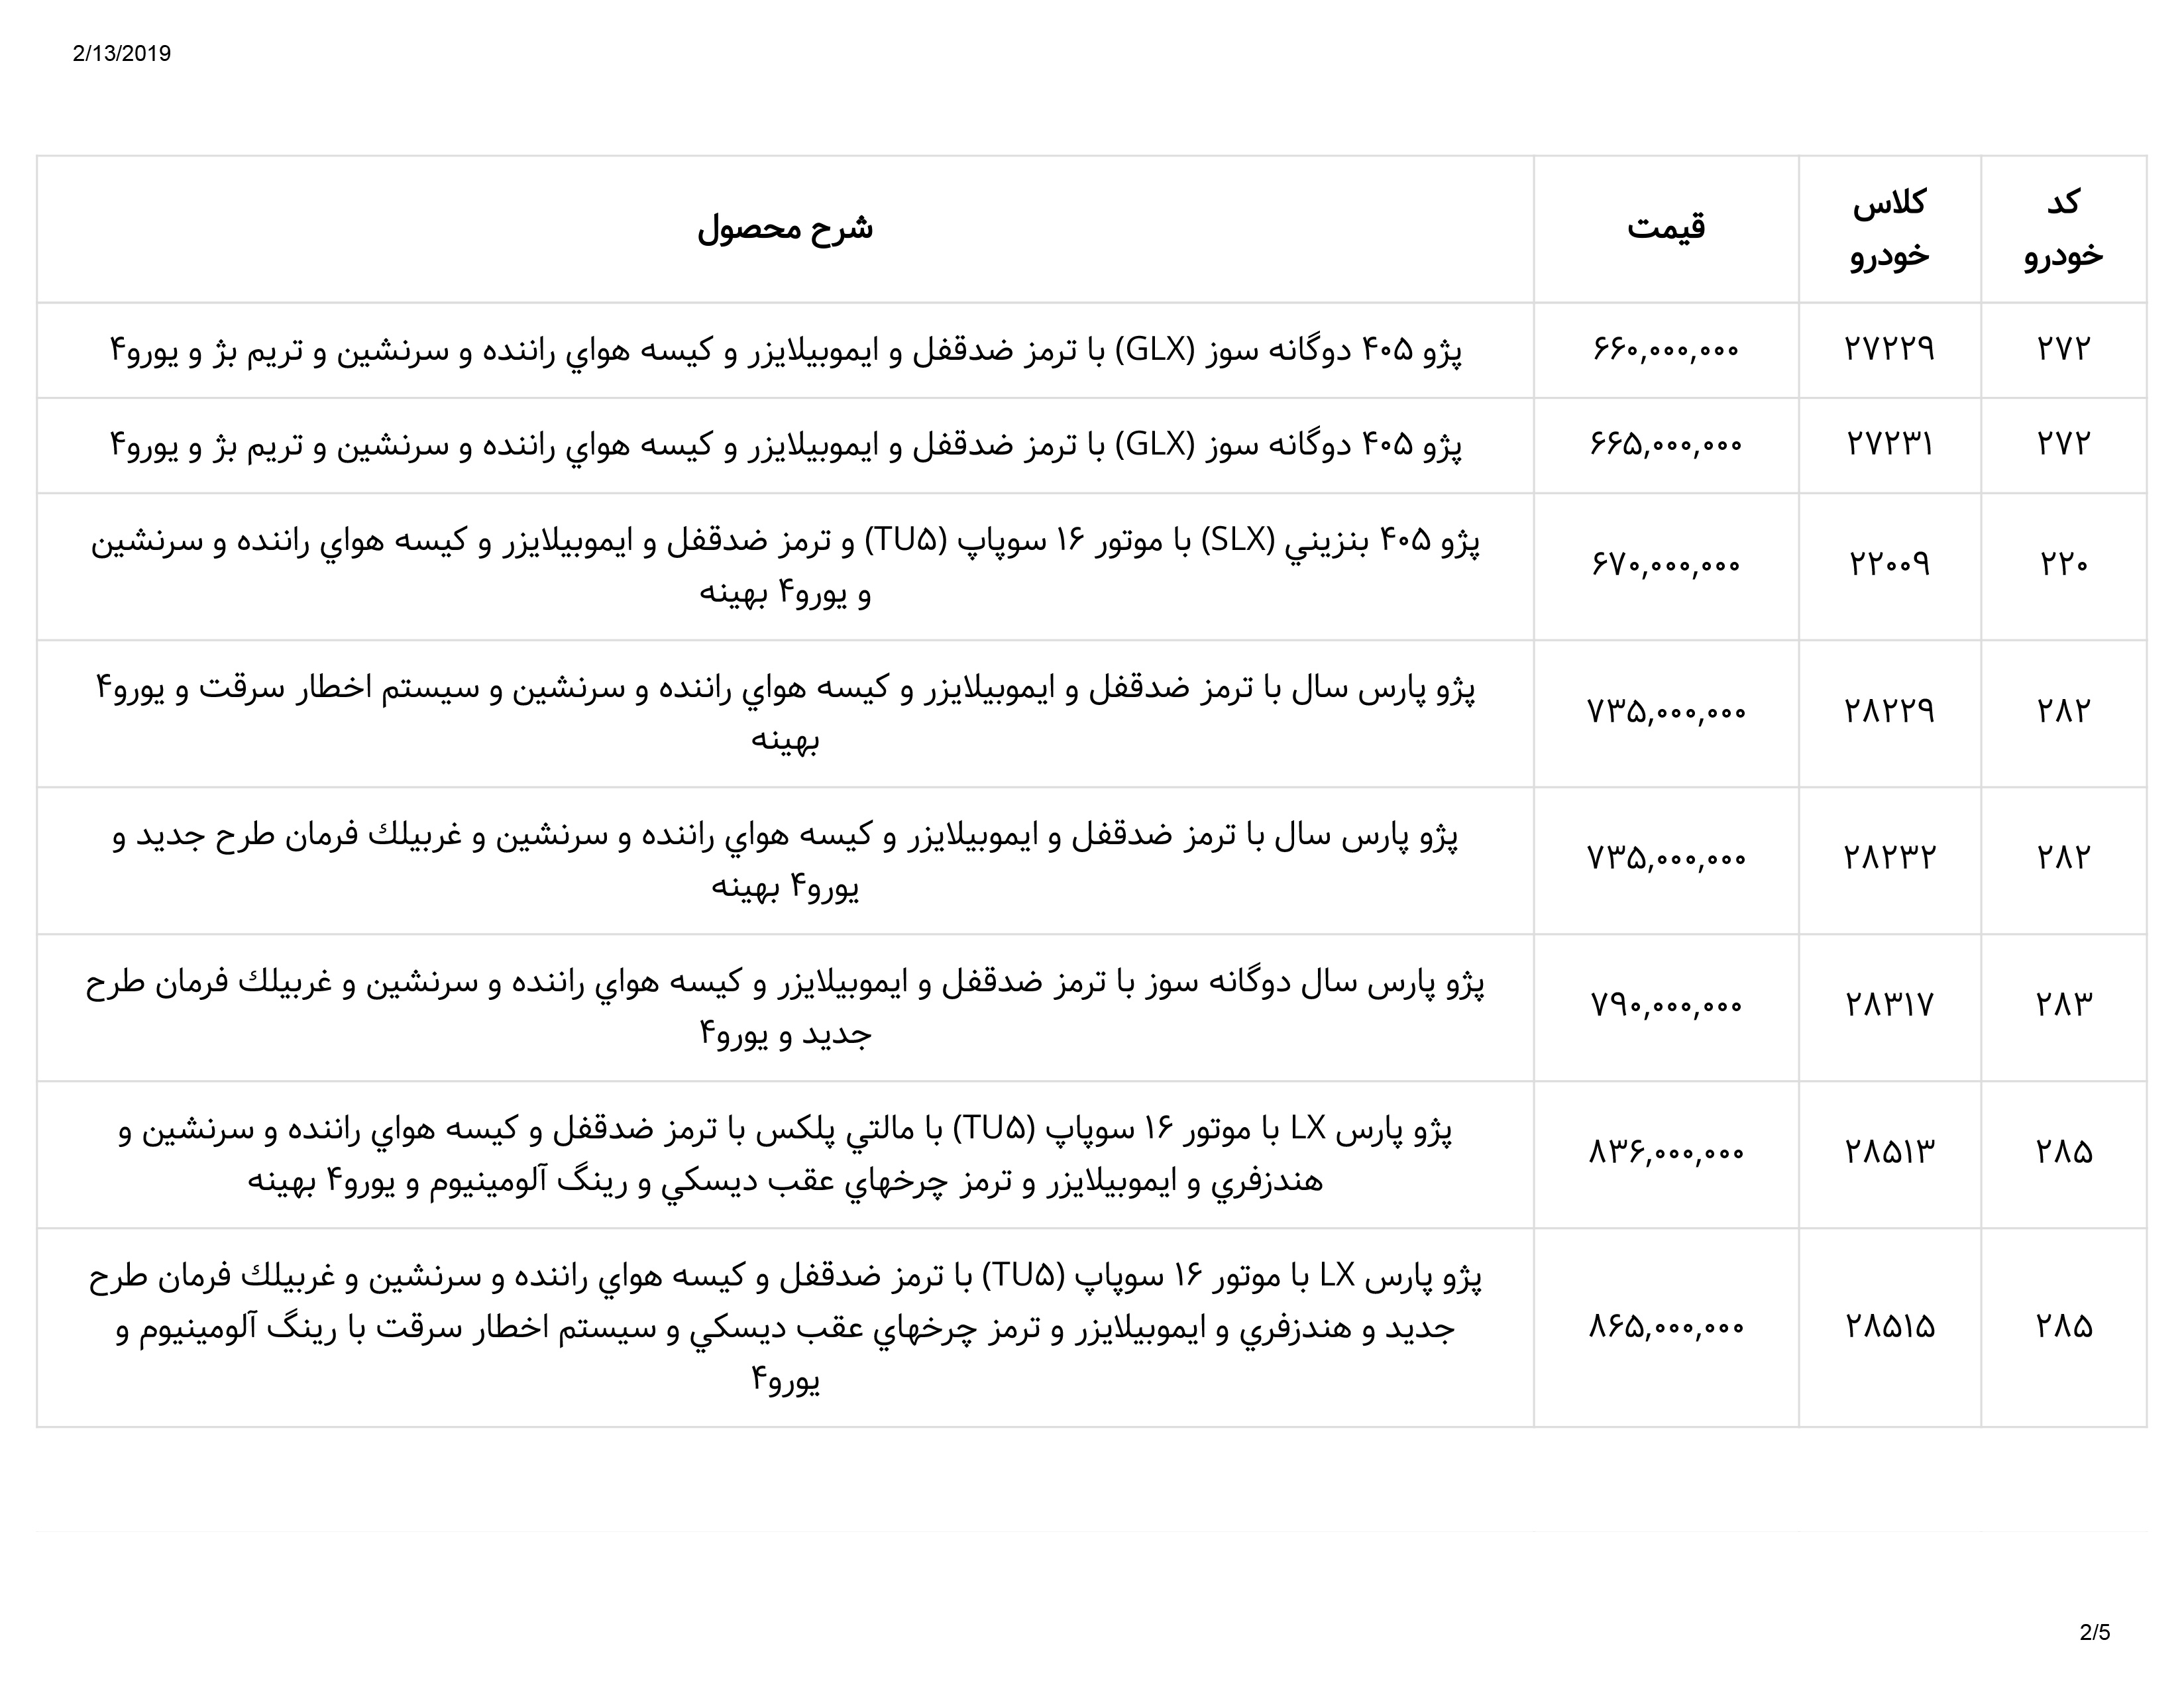 ایران خودرو لیست قیمت 2 - لیست قیمت محصولات ایران خودرو ۲۵ بهمن ۱۳۹۷